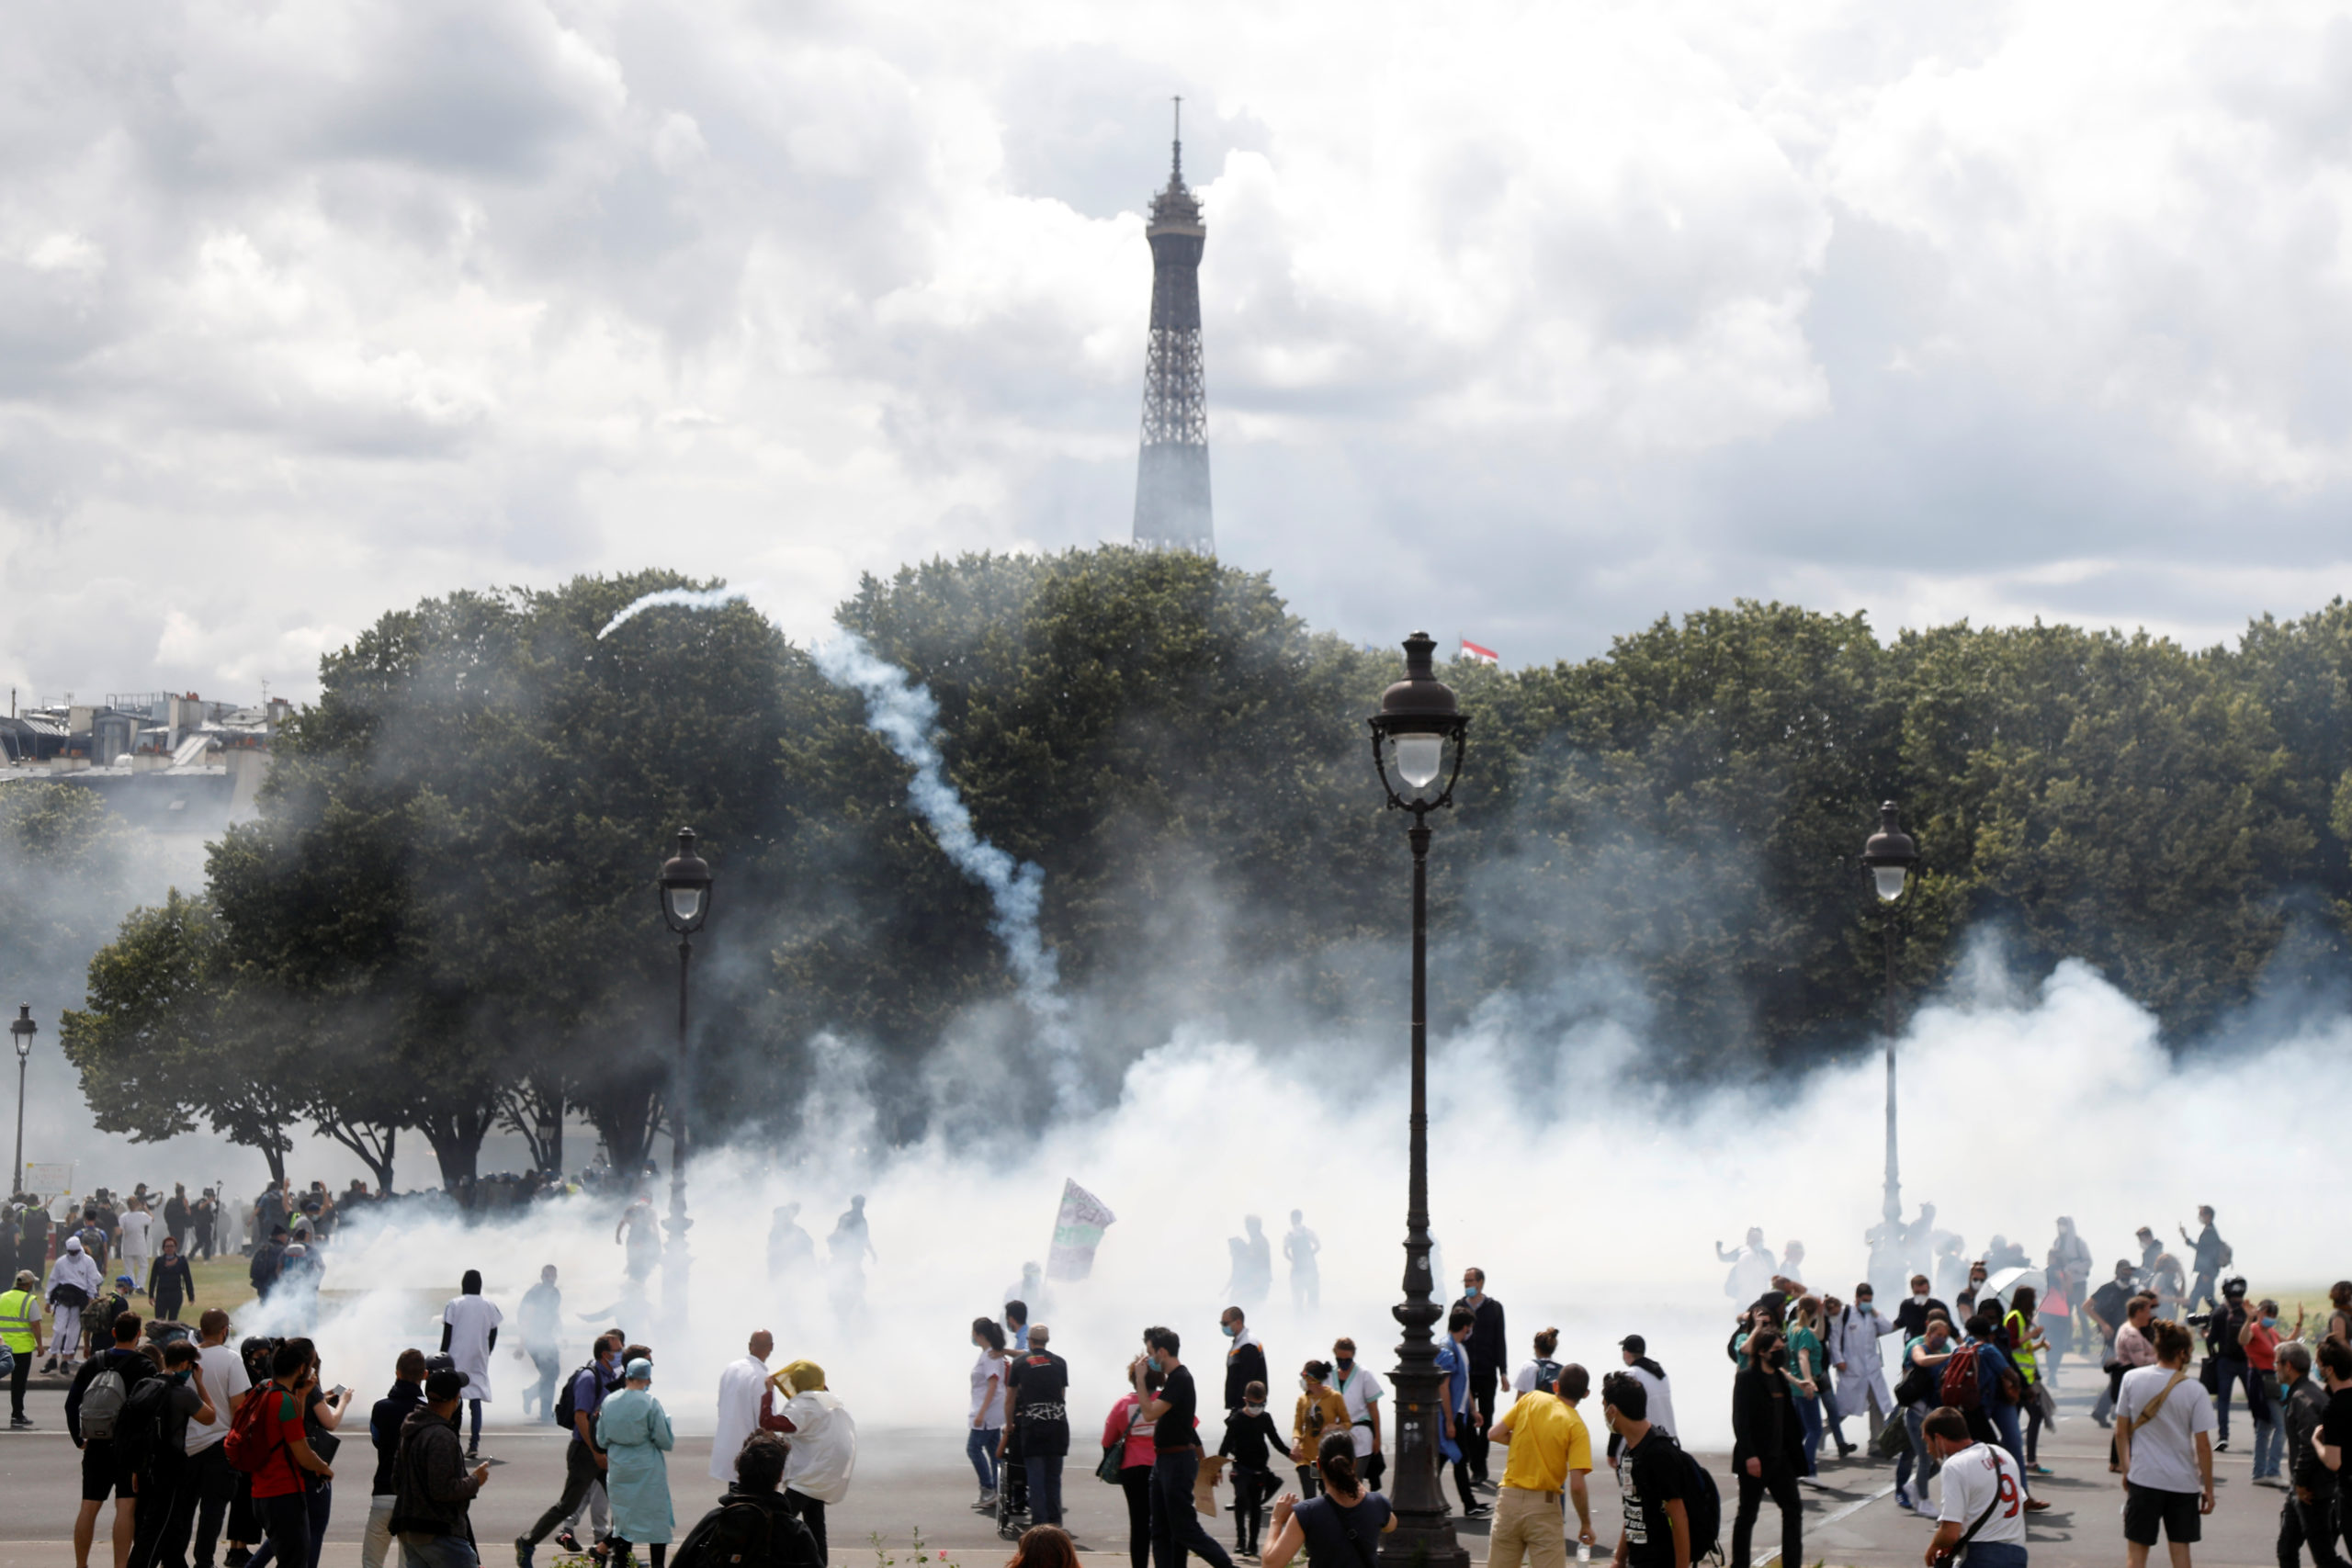 Le personnel soignant manifeste, tensions à Paris